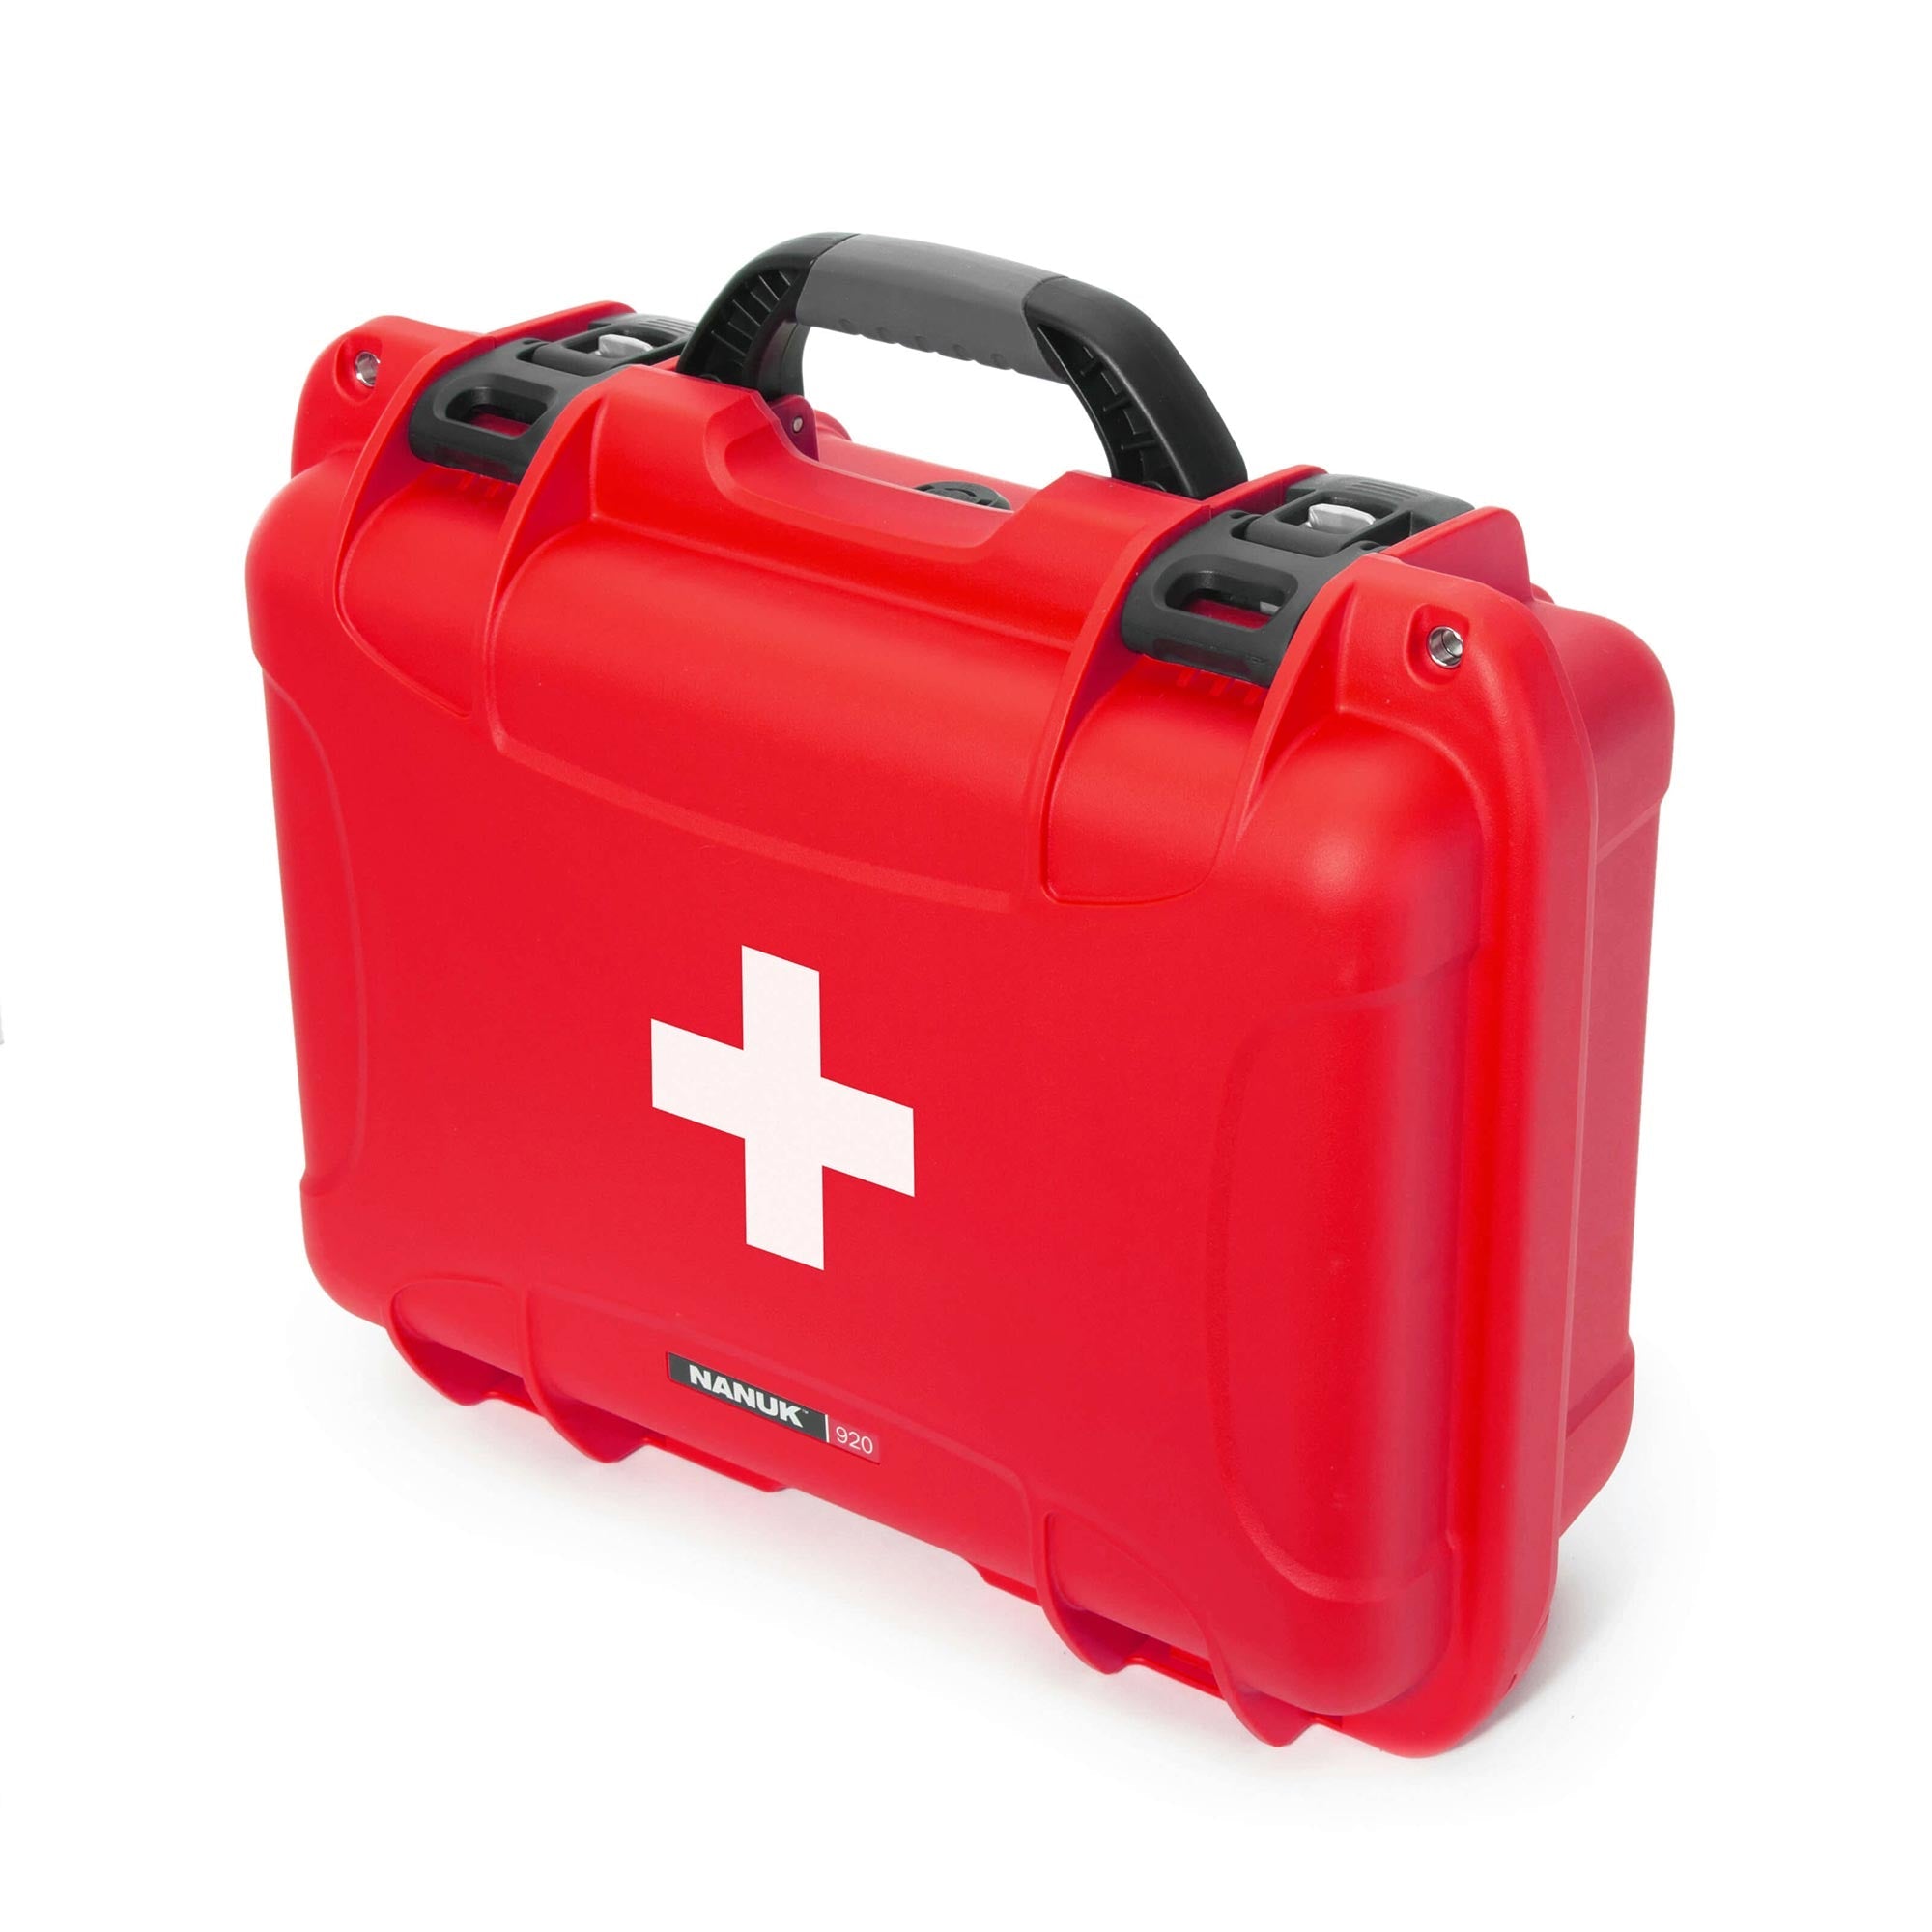 NANUK 920 valise de premiers secours - valise extérieur - Rouge - NANUK